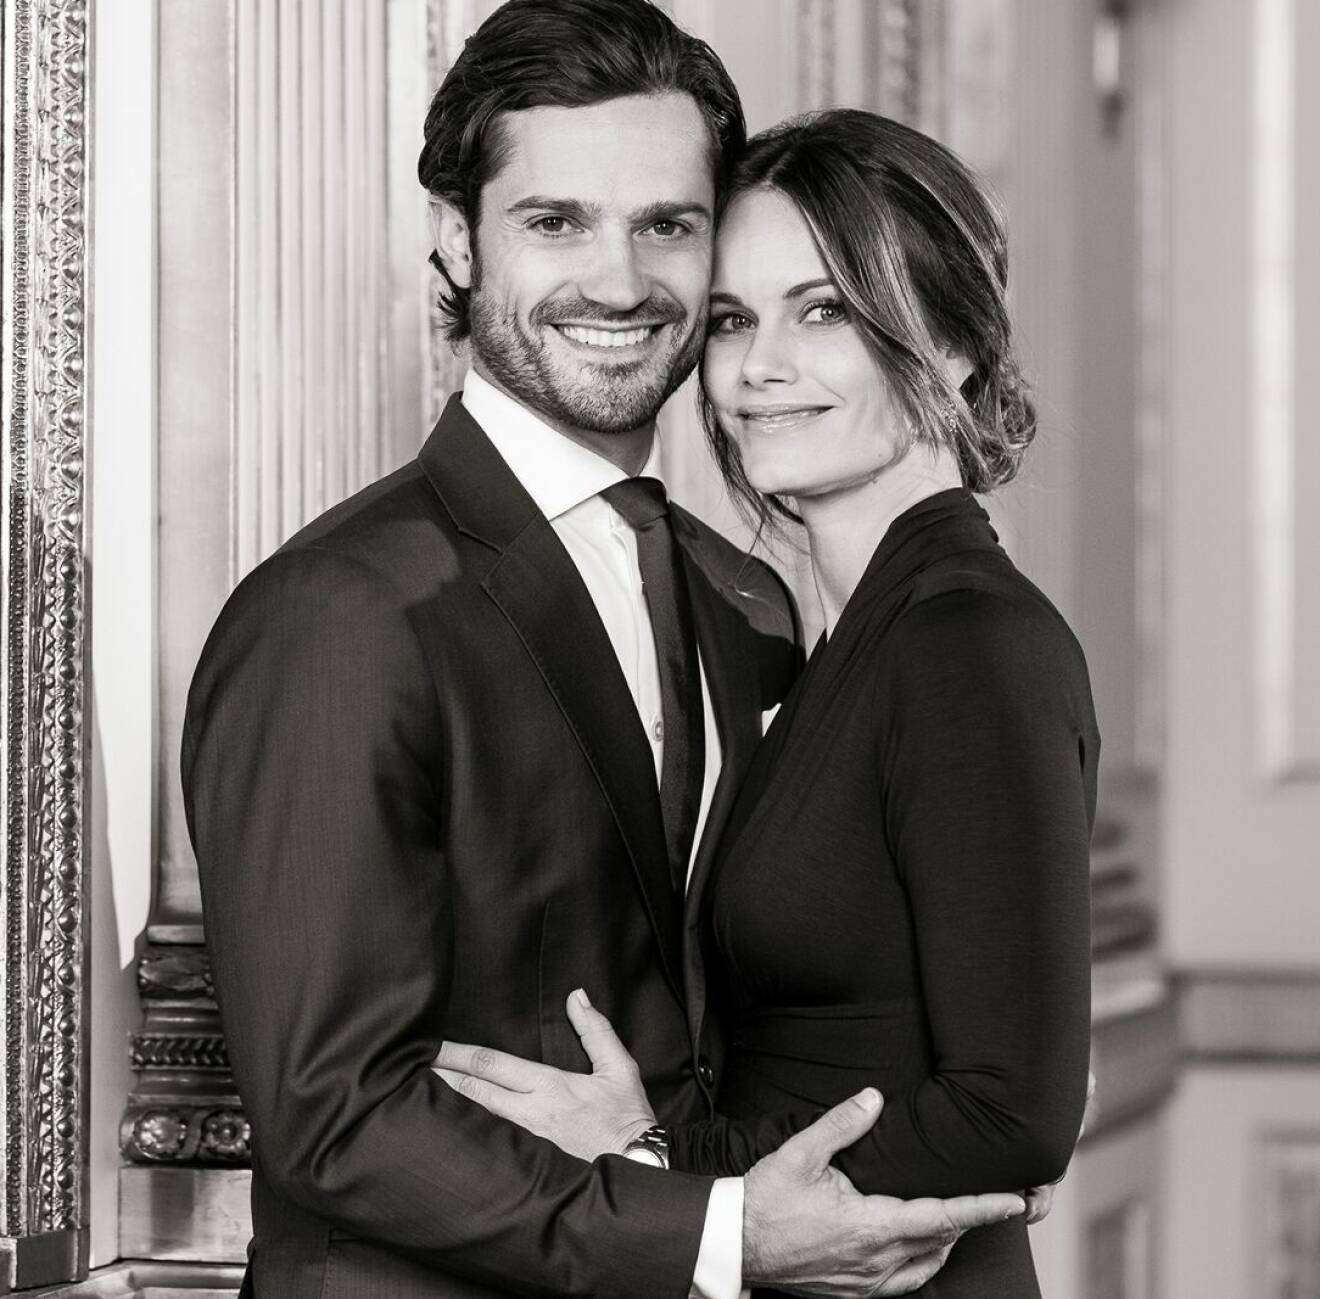 Prinsessan Sofia och prins Carl Philip kramas på hovets officiella bild